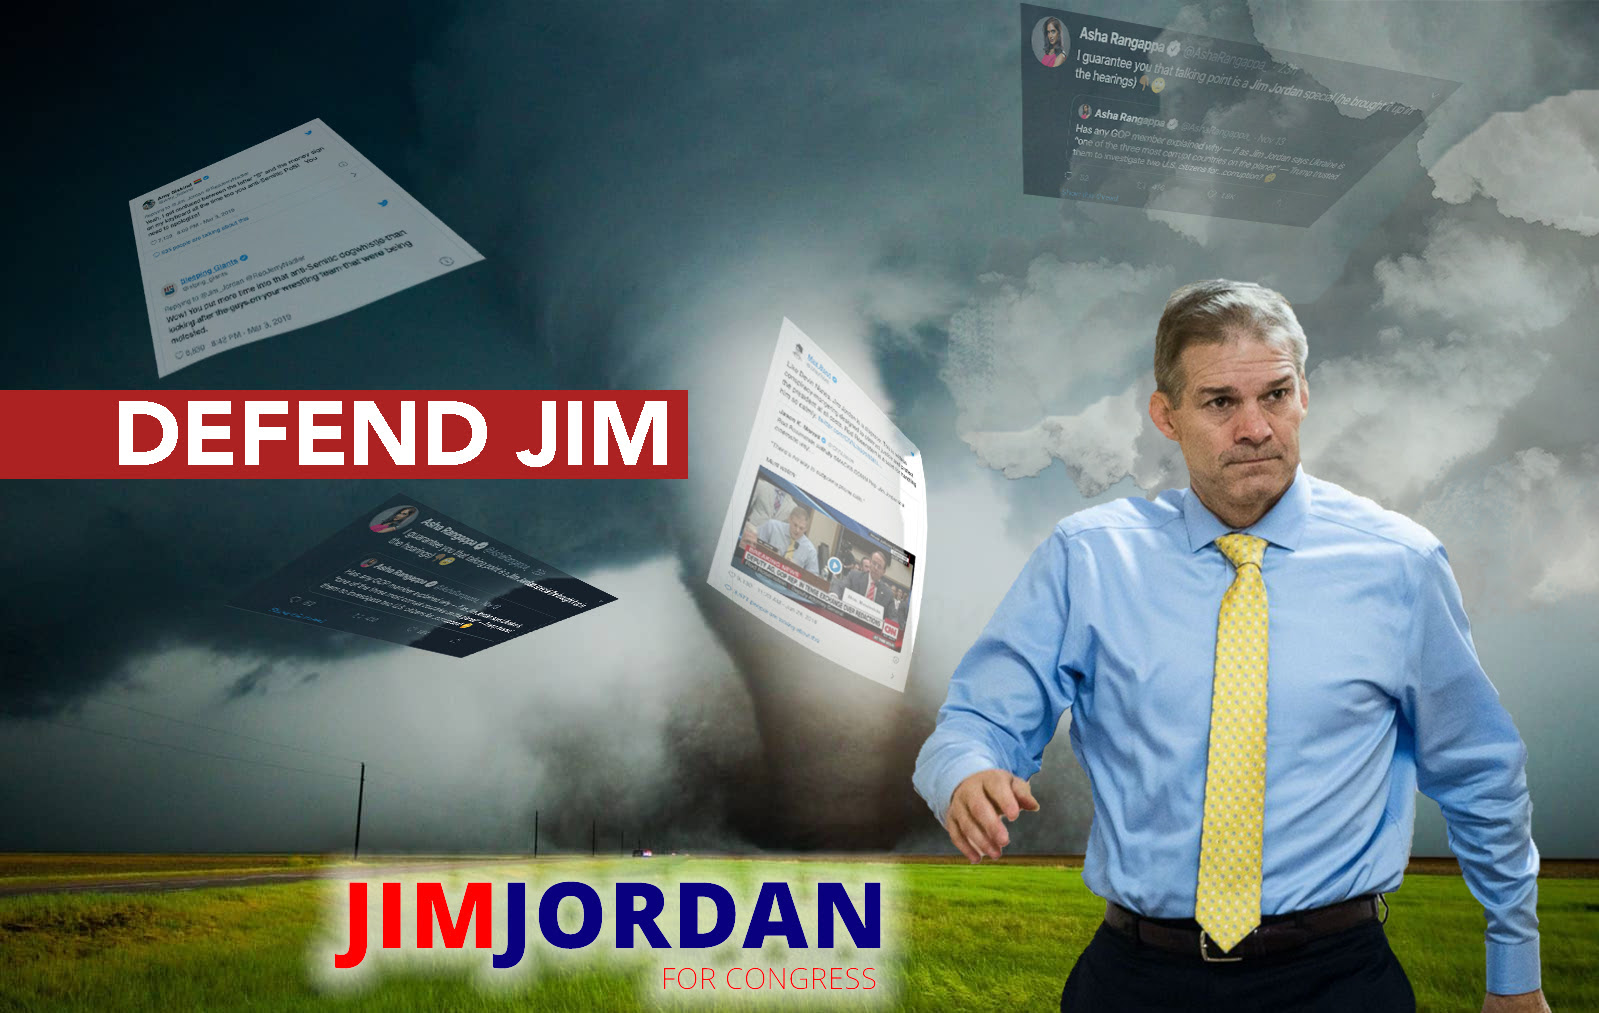 Defend Jim Jordan!